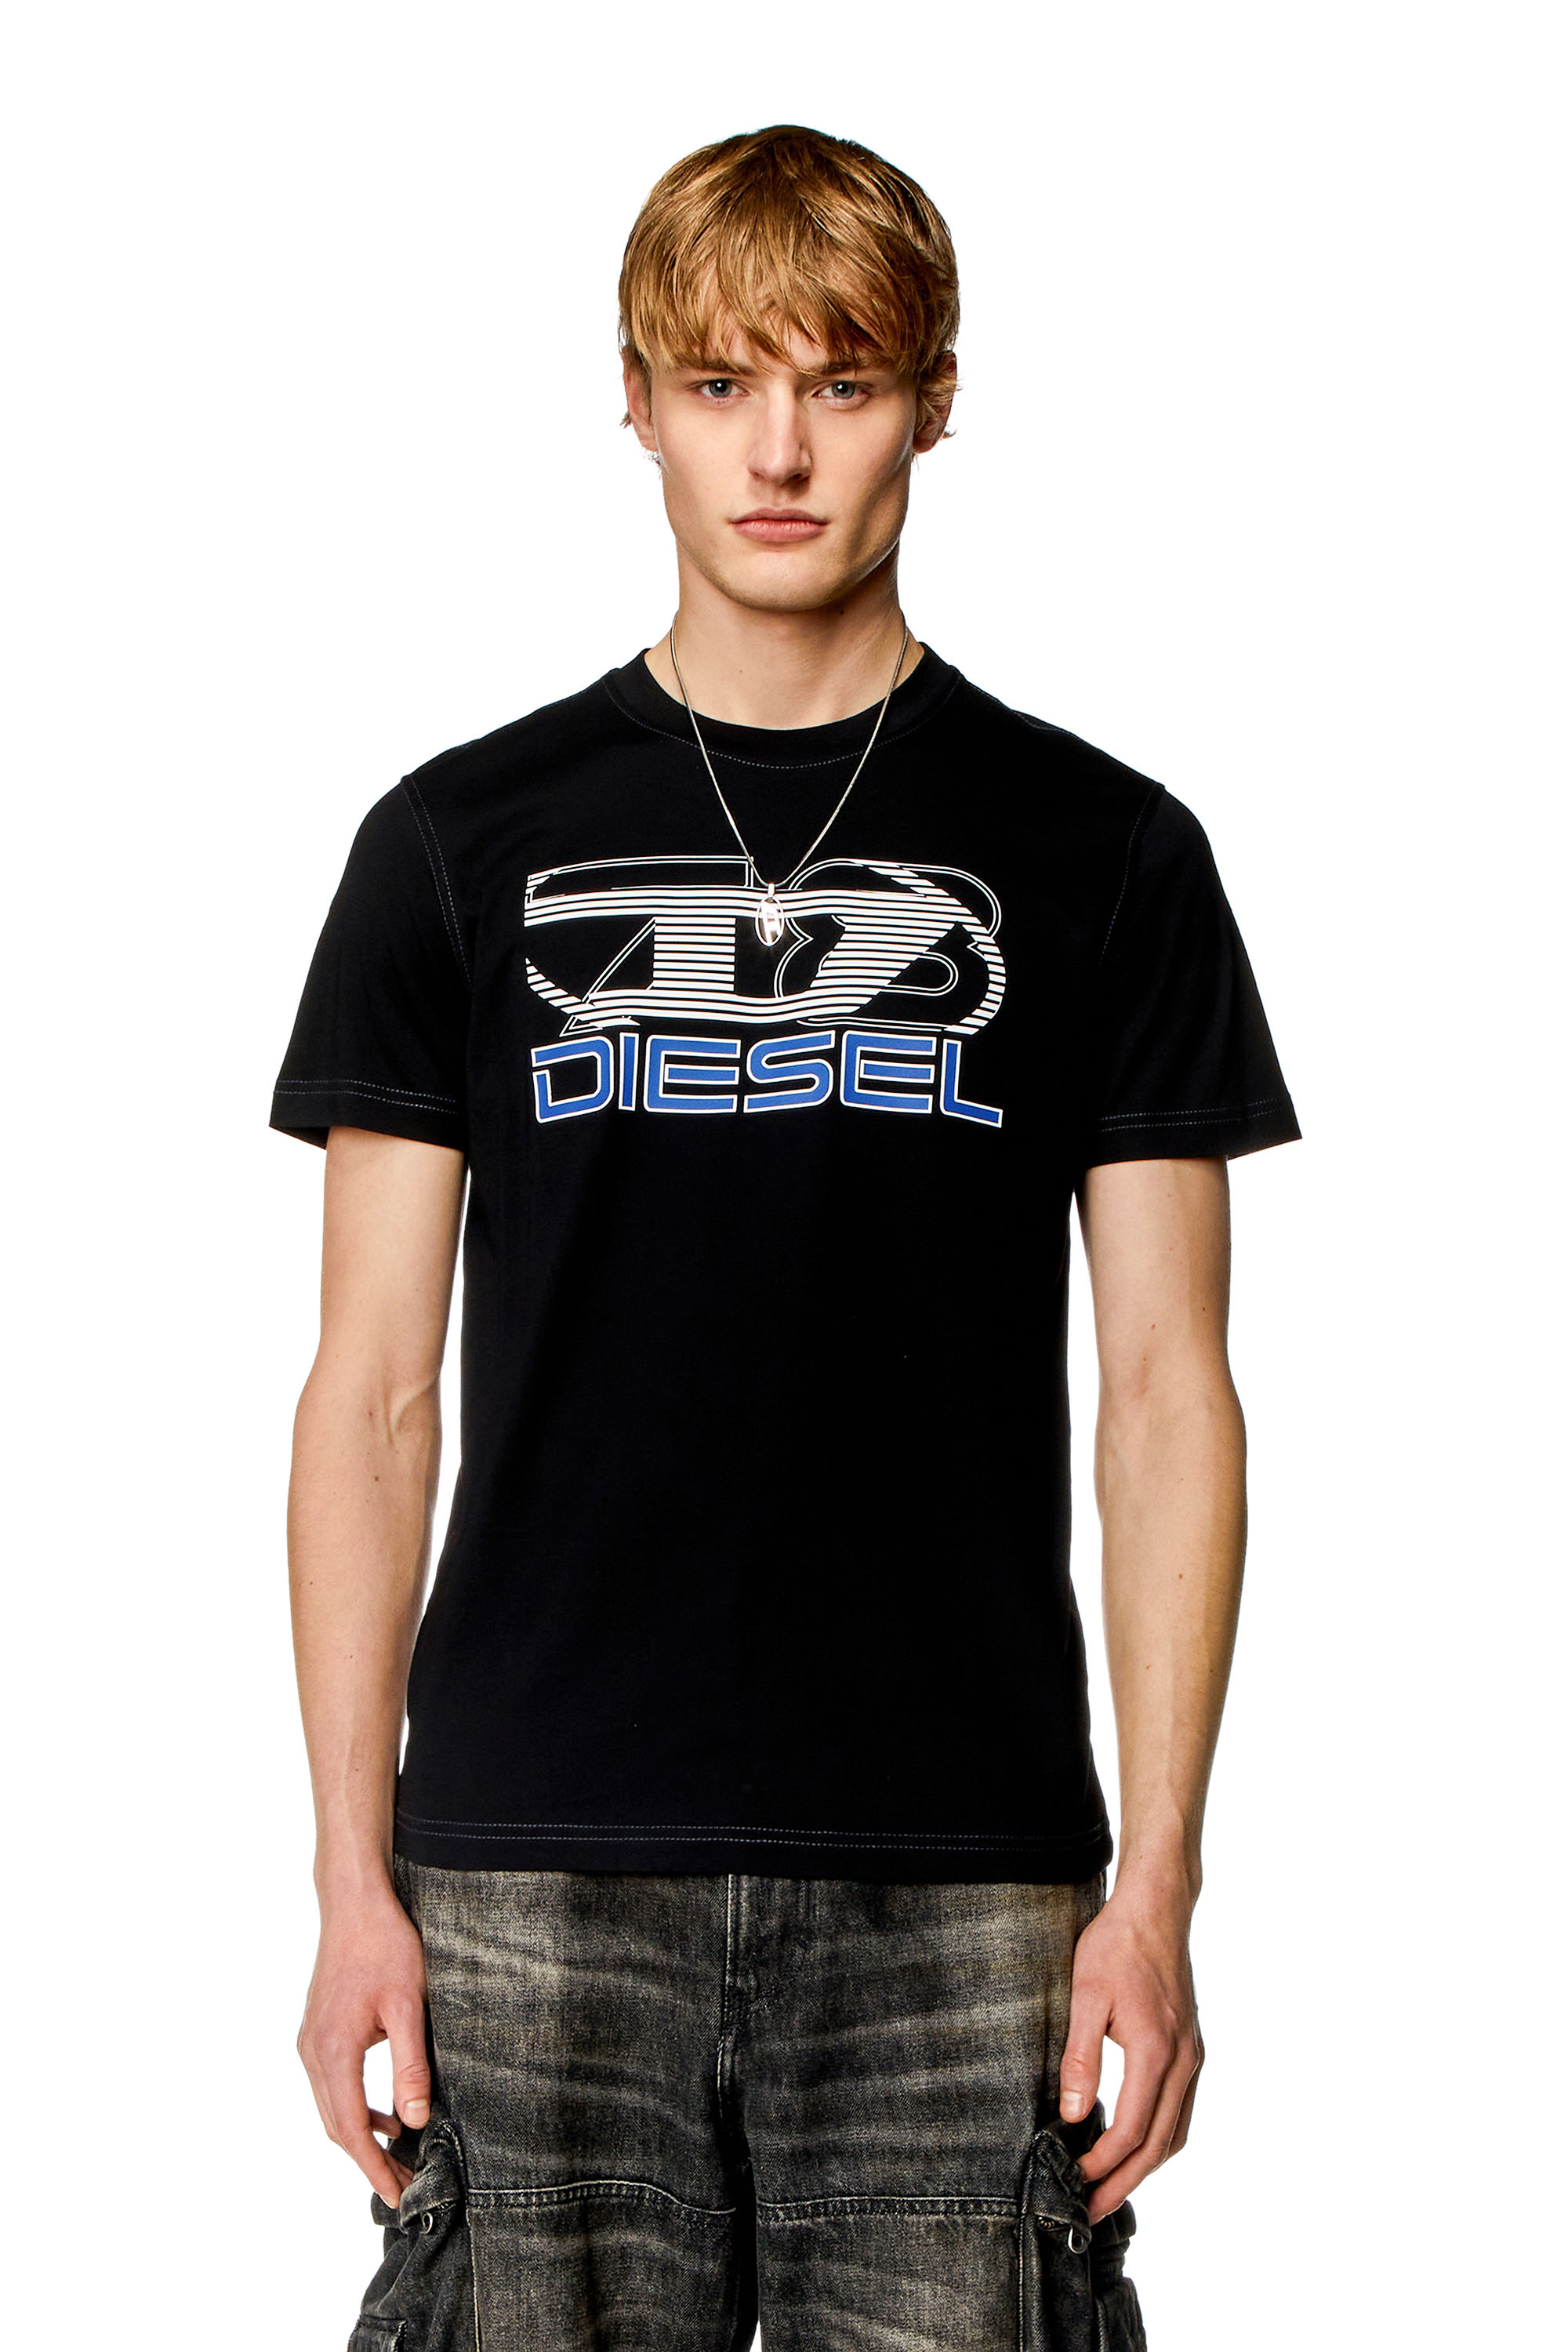 Diesel - Camiseta con estampado Oval D 78 - Camisetas - Hombre - Negro